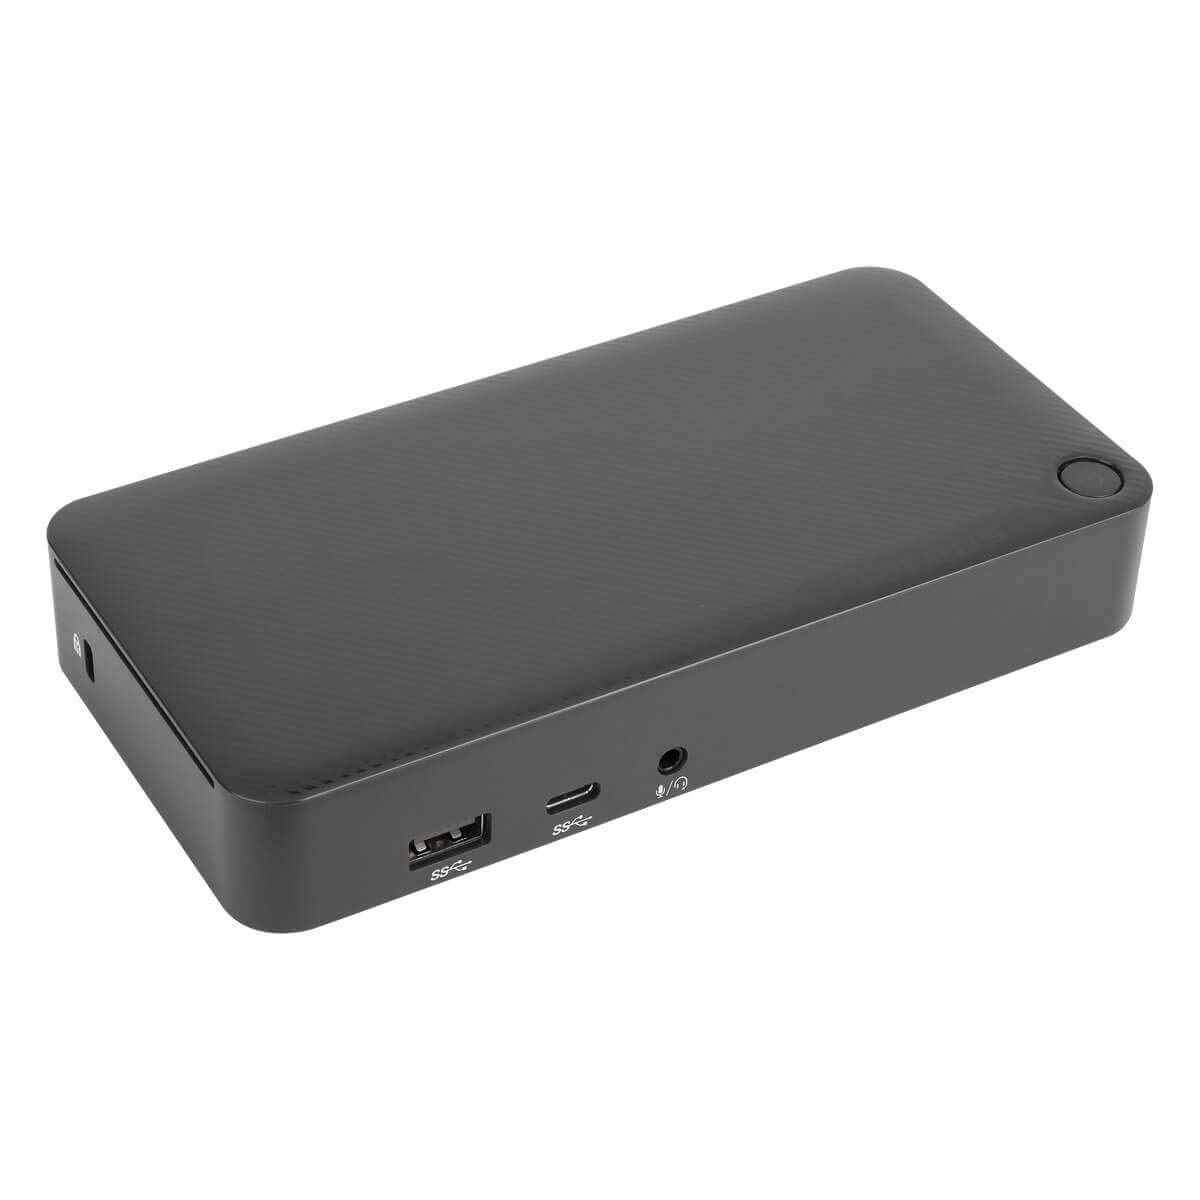 Targus 具有 65W 供电能力的通用 USB-C DV4K 扩展坞 - 适用于笔记本电脑/显示器 - 65 W - USB C 型 - 4 个 USB 端口 - 网络 (RJ-45) - HDMI - Thunderbolt - 有线